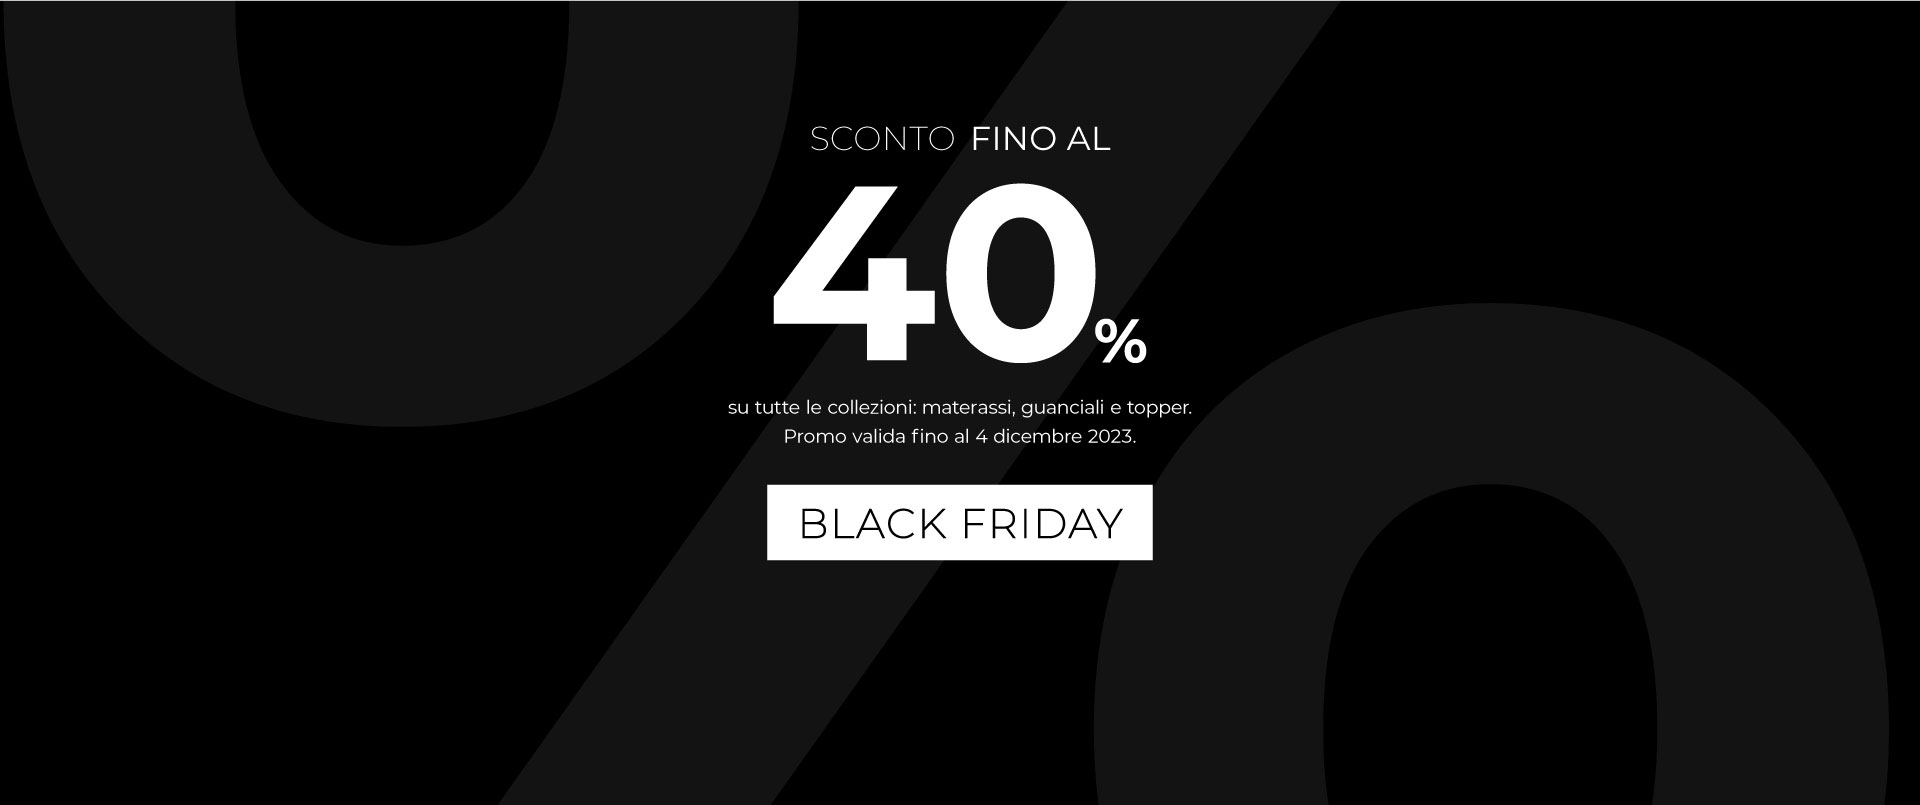 Banner Promo Black Friday - Sconti fino al 40%